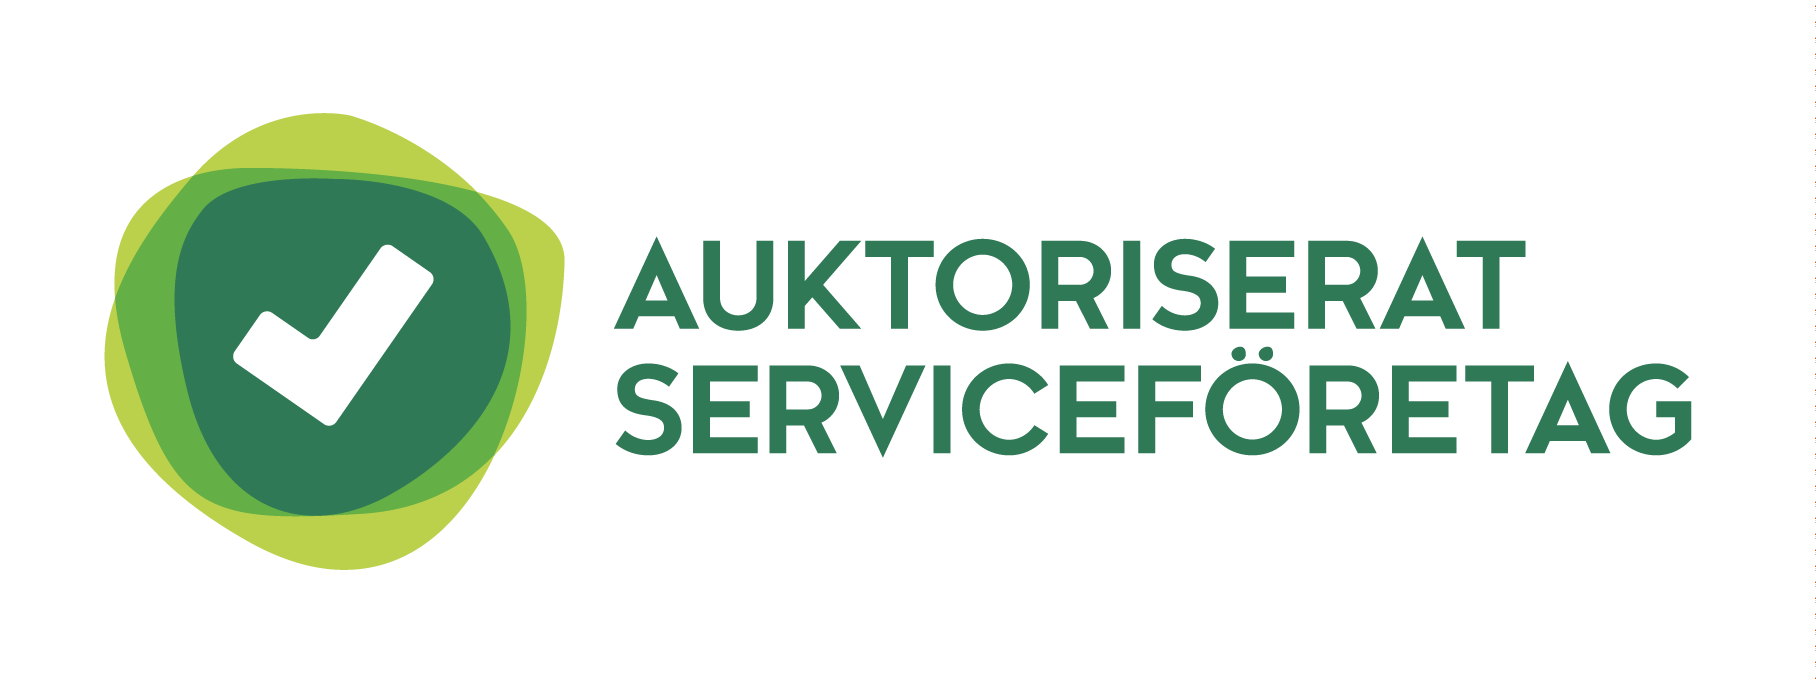 Almega Serviceentreprenörerna (Svenskt Näringsliv) ansvarar för auktorisationen av Städpojkarna.